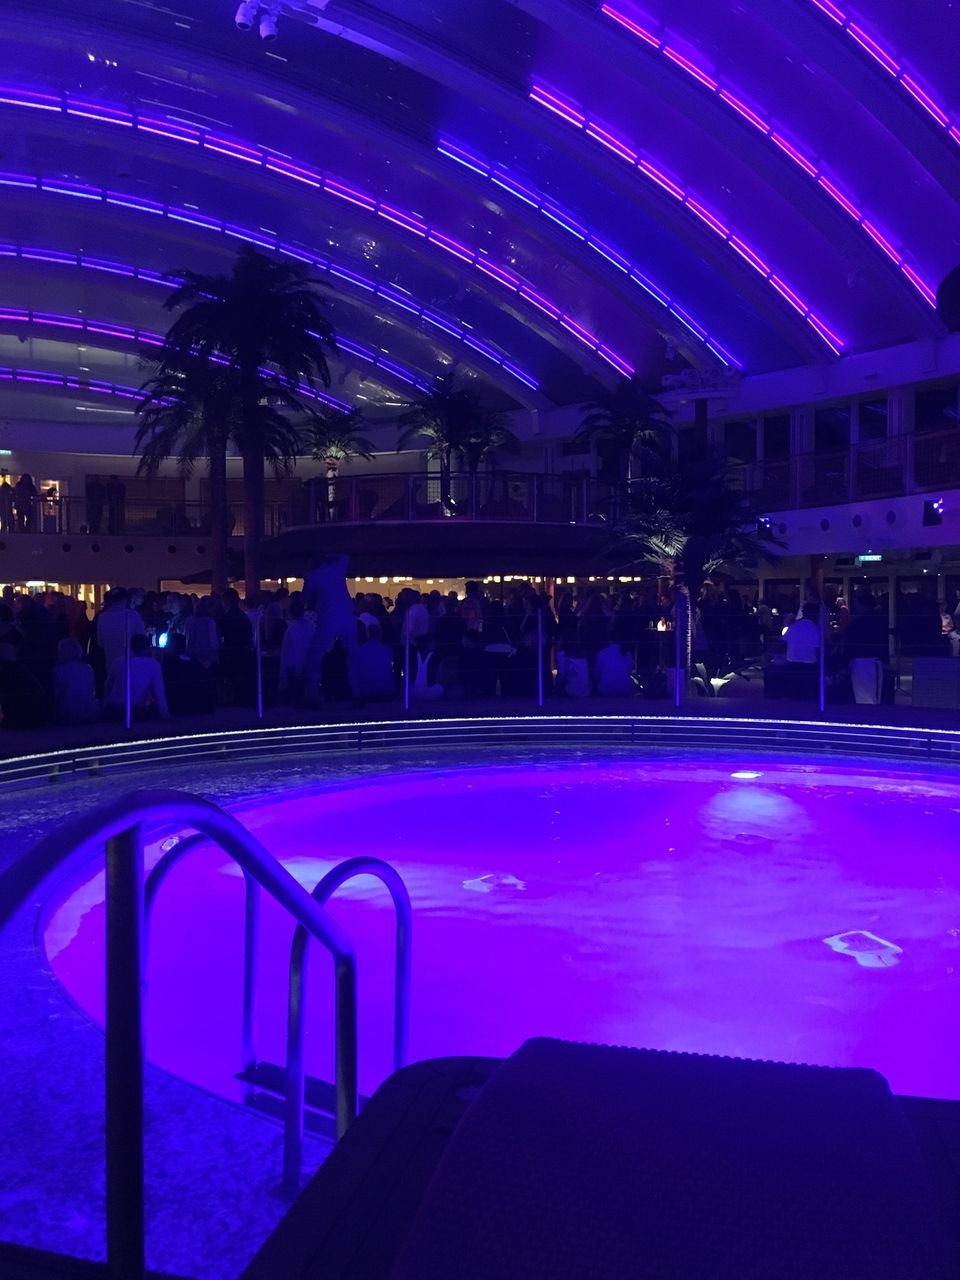 Abends verwandelt sich der Beachclub zur Partyzone: Musik und Cocktails lassen die Liegefläche zum Dancefloor werden, das Dach und der Pool werden stimmungsvoll beleuchtet.